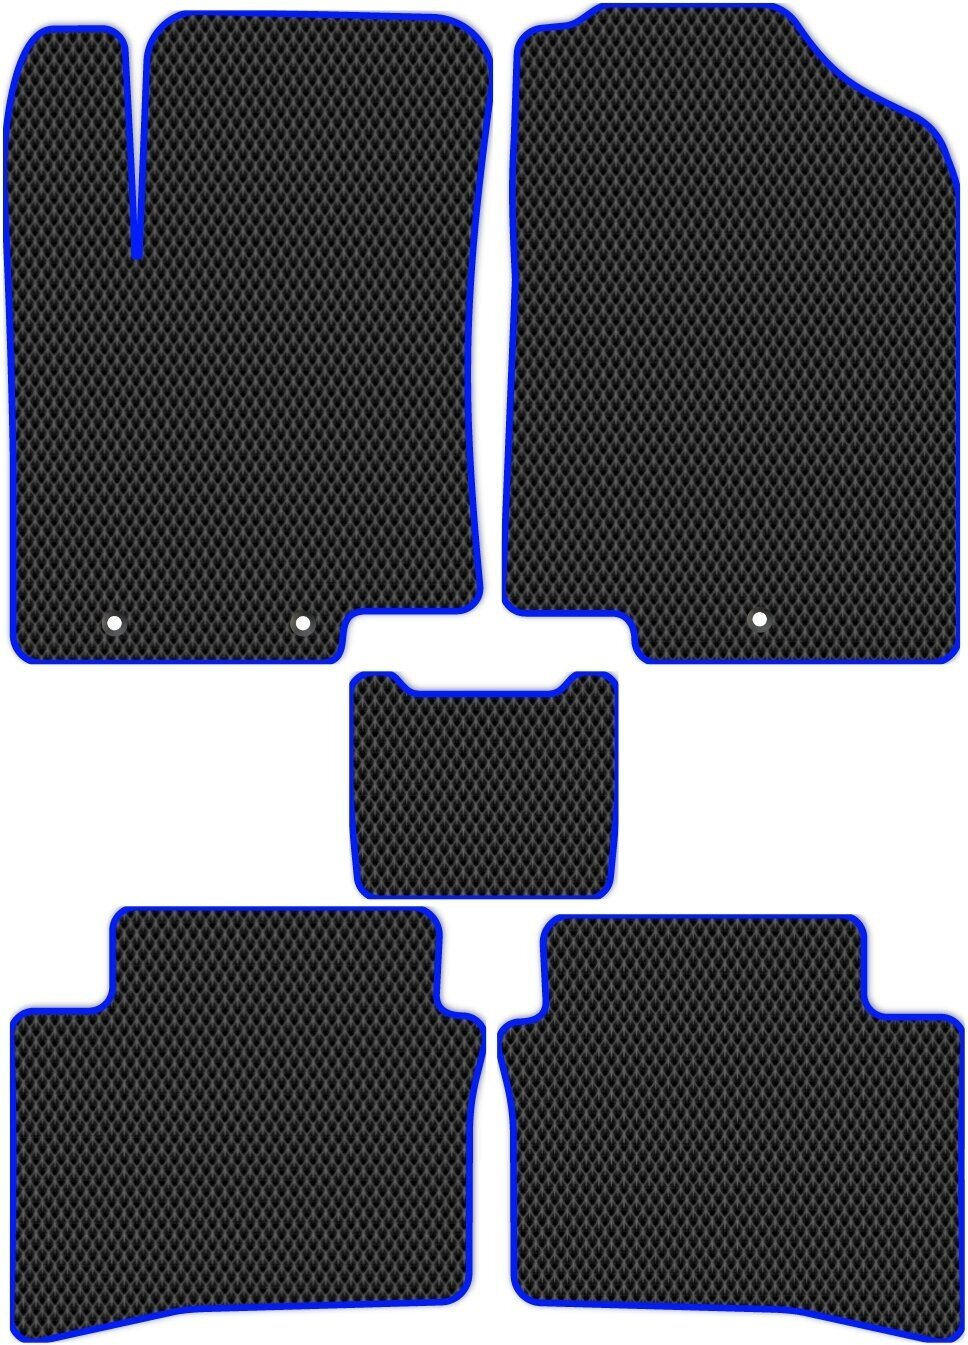 Коврики в салон автомобиля ЭВА Allmone для Kia Rio 3 (QB) 2011 - 2017, черные с синим кантом, 5шт. / Киа Рио 3